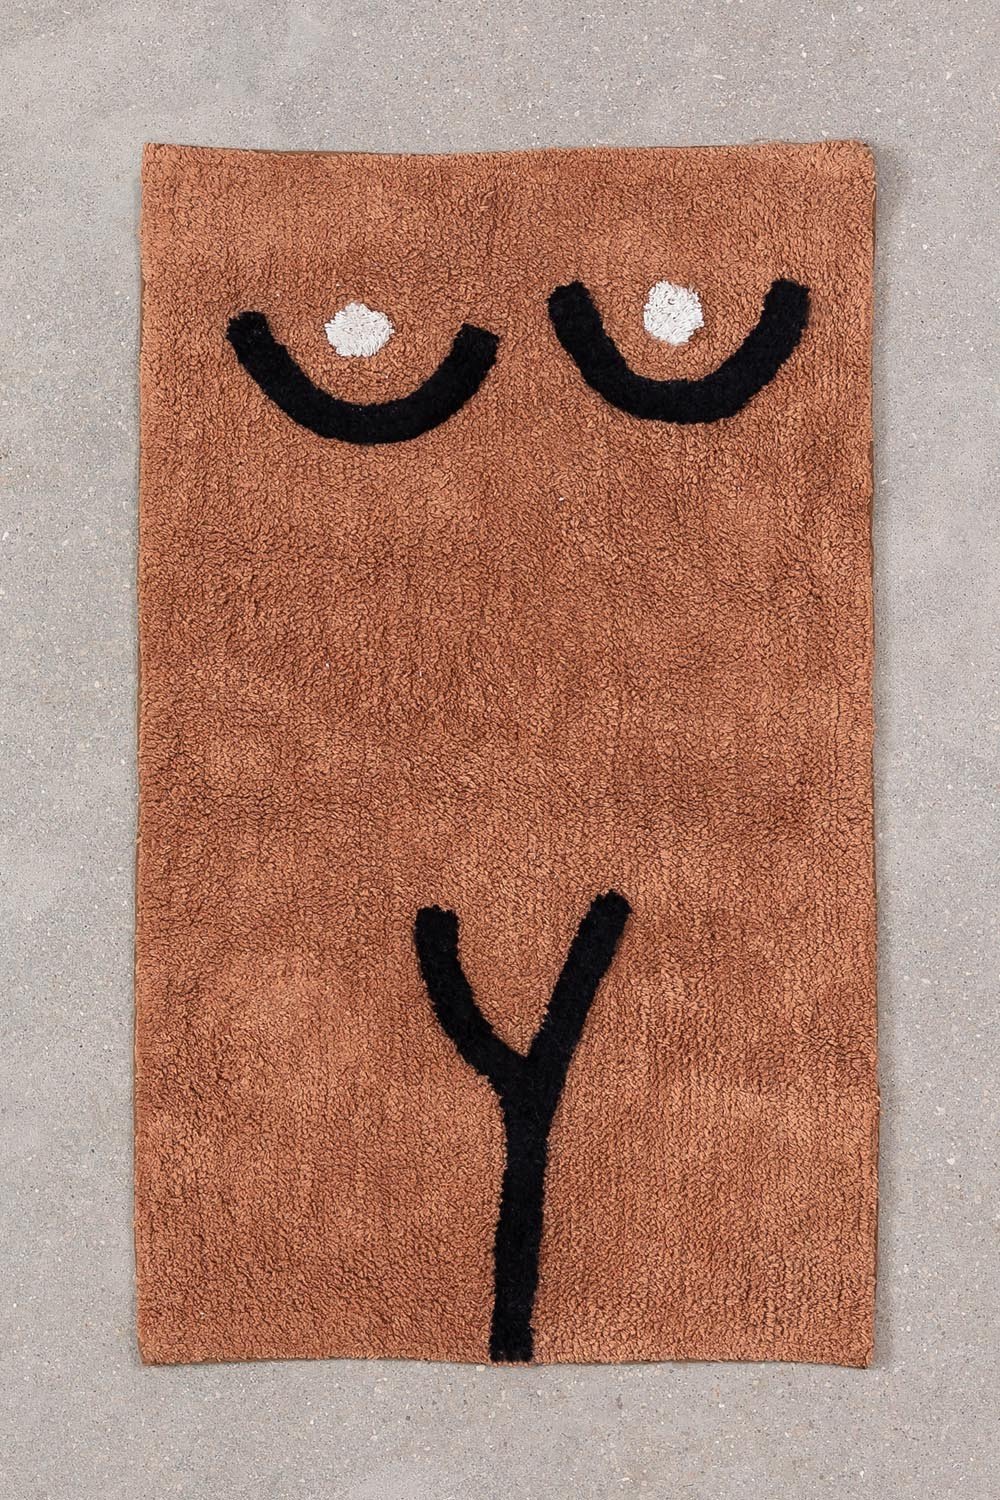 Tappetino da bagno in cotone (40x70 cm) Luet, immagine della galleria 1